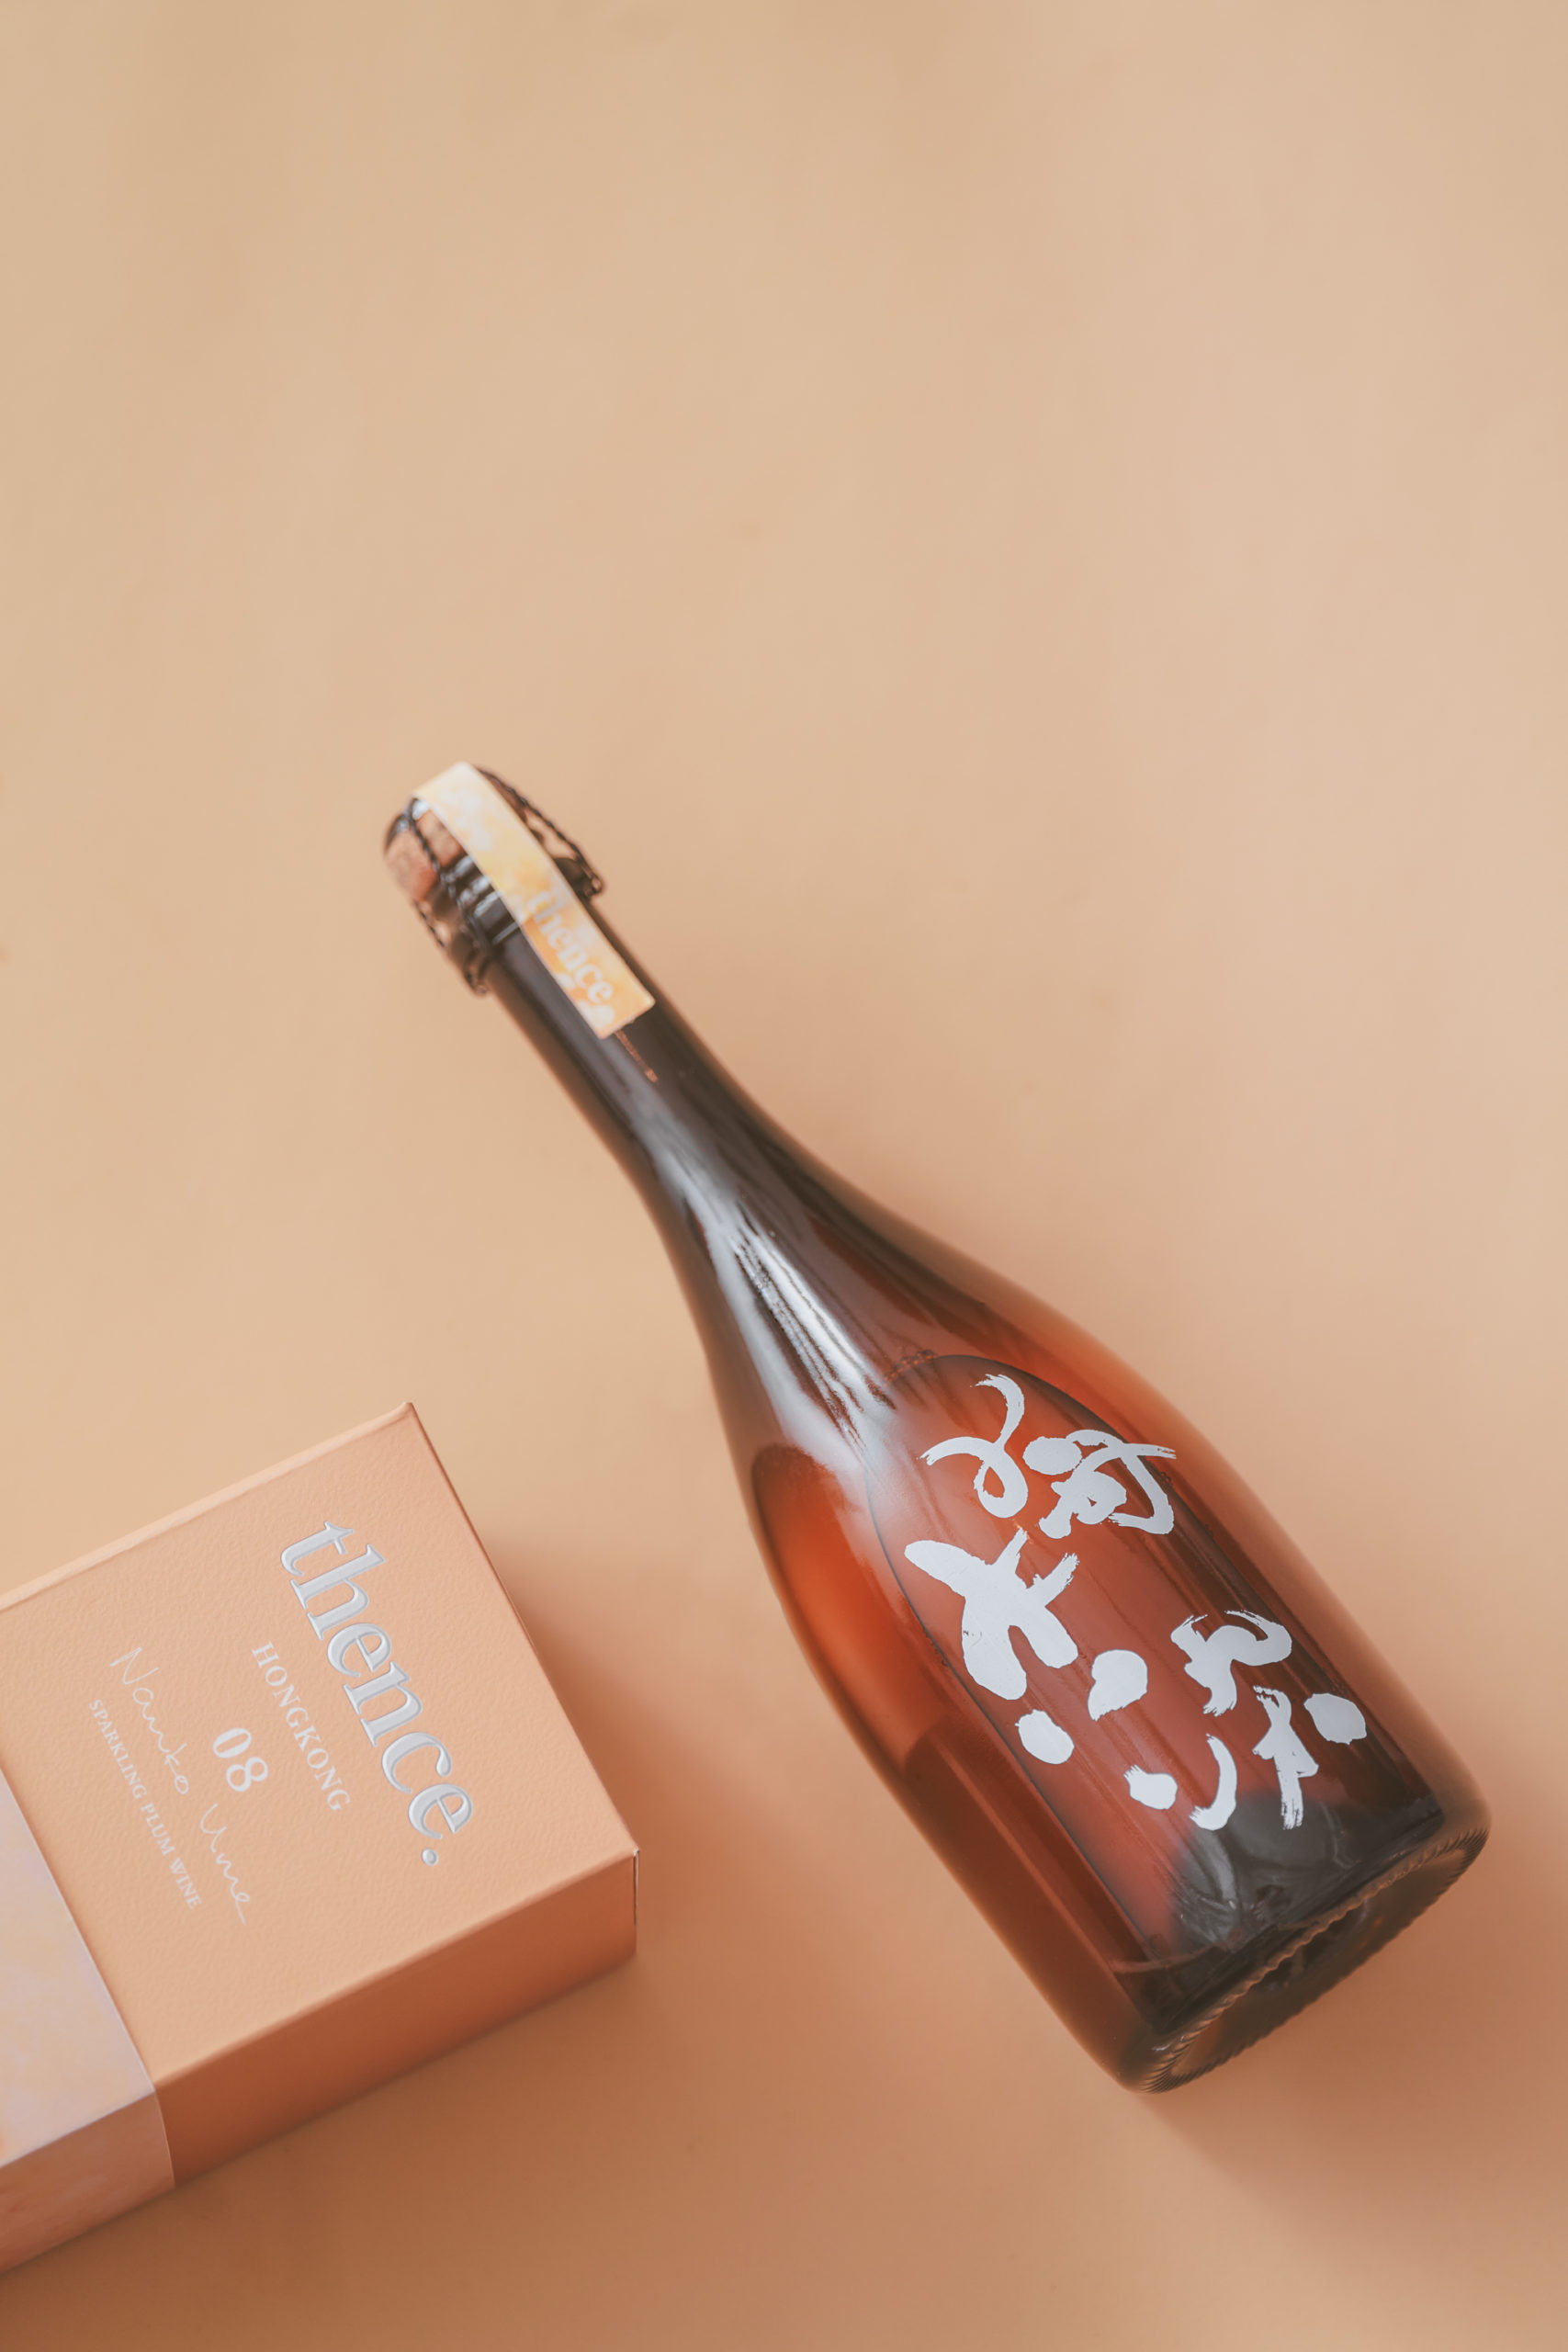 白蘭樹下 氣泡蜂蜜梅酒 二次發酵 港產香檳 梅染 賣字